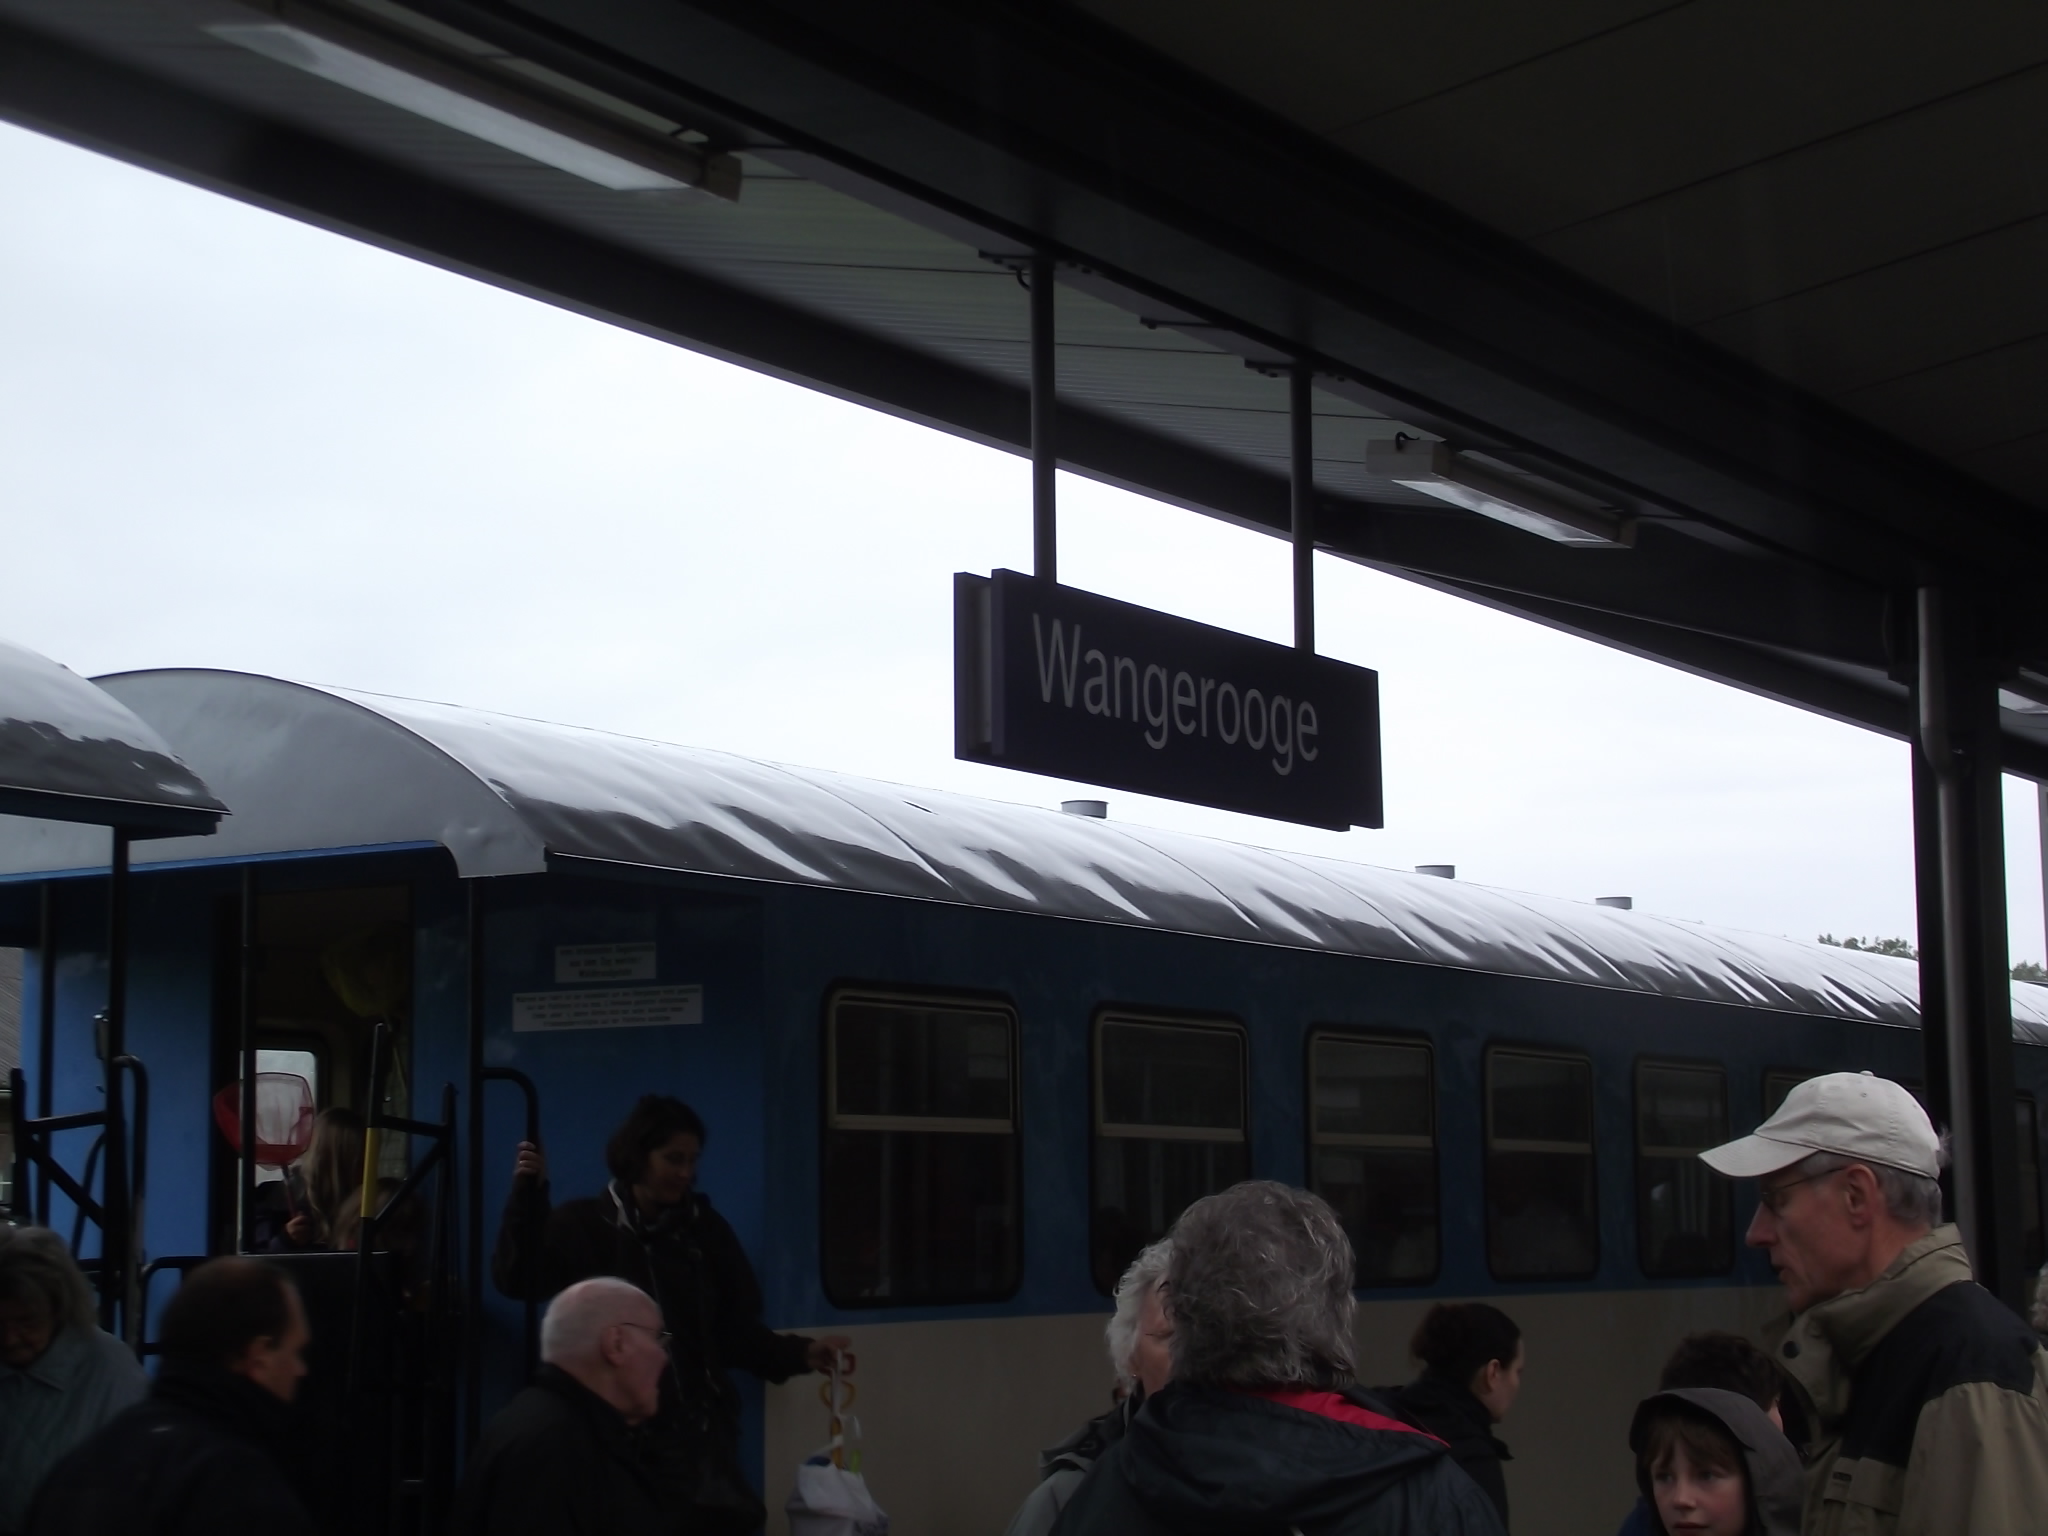 Ankunft am Bahnhof von Wangerooge mit der Inselbahn